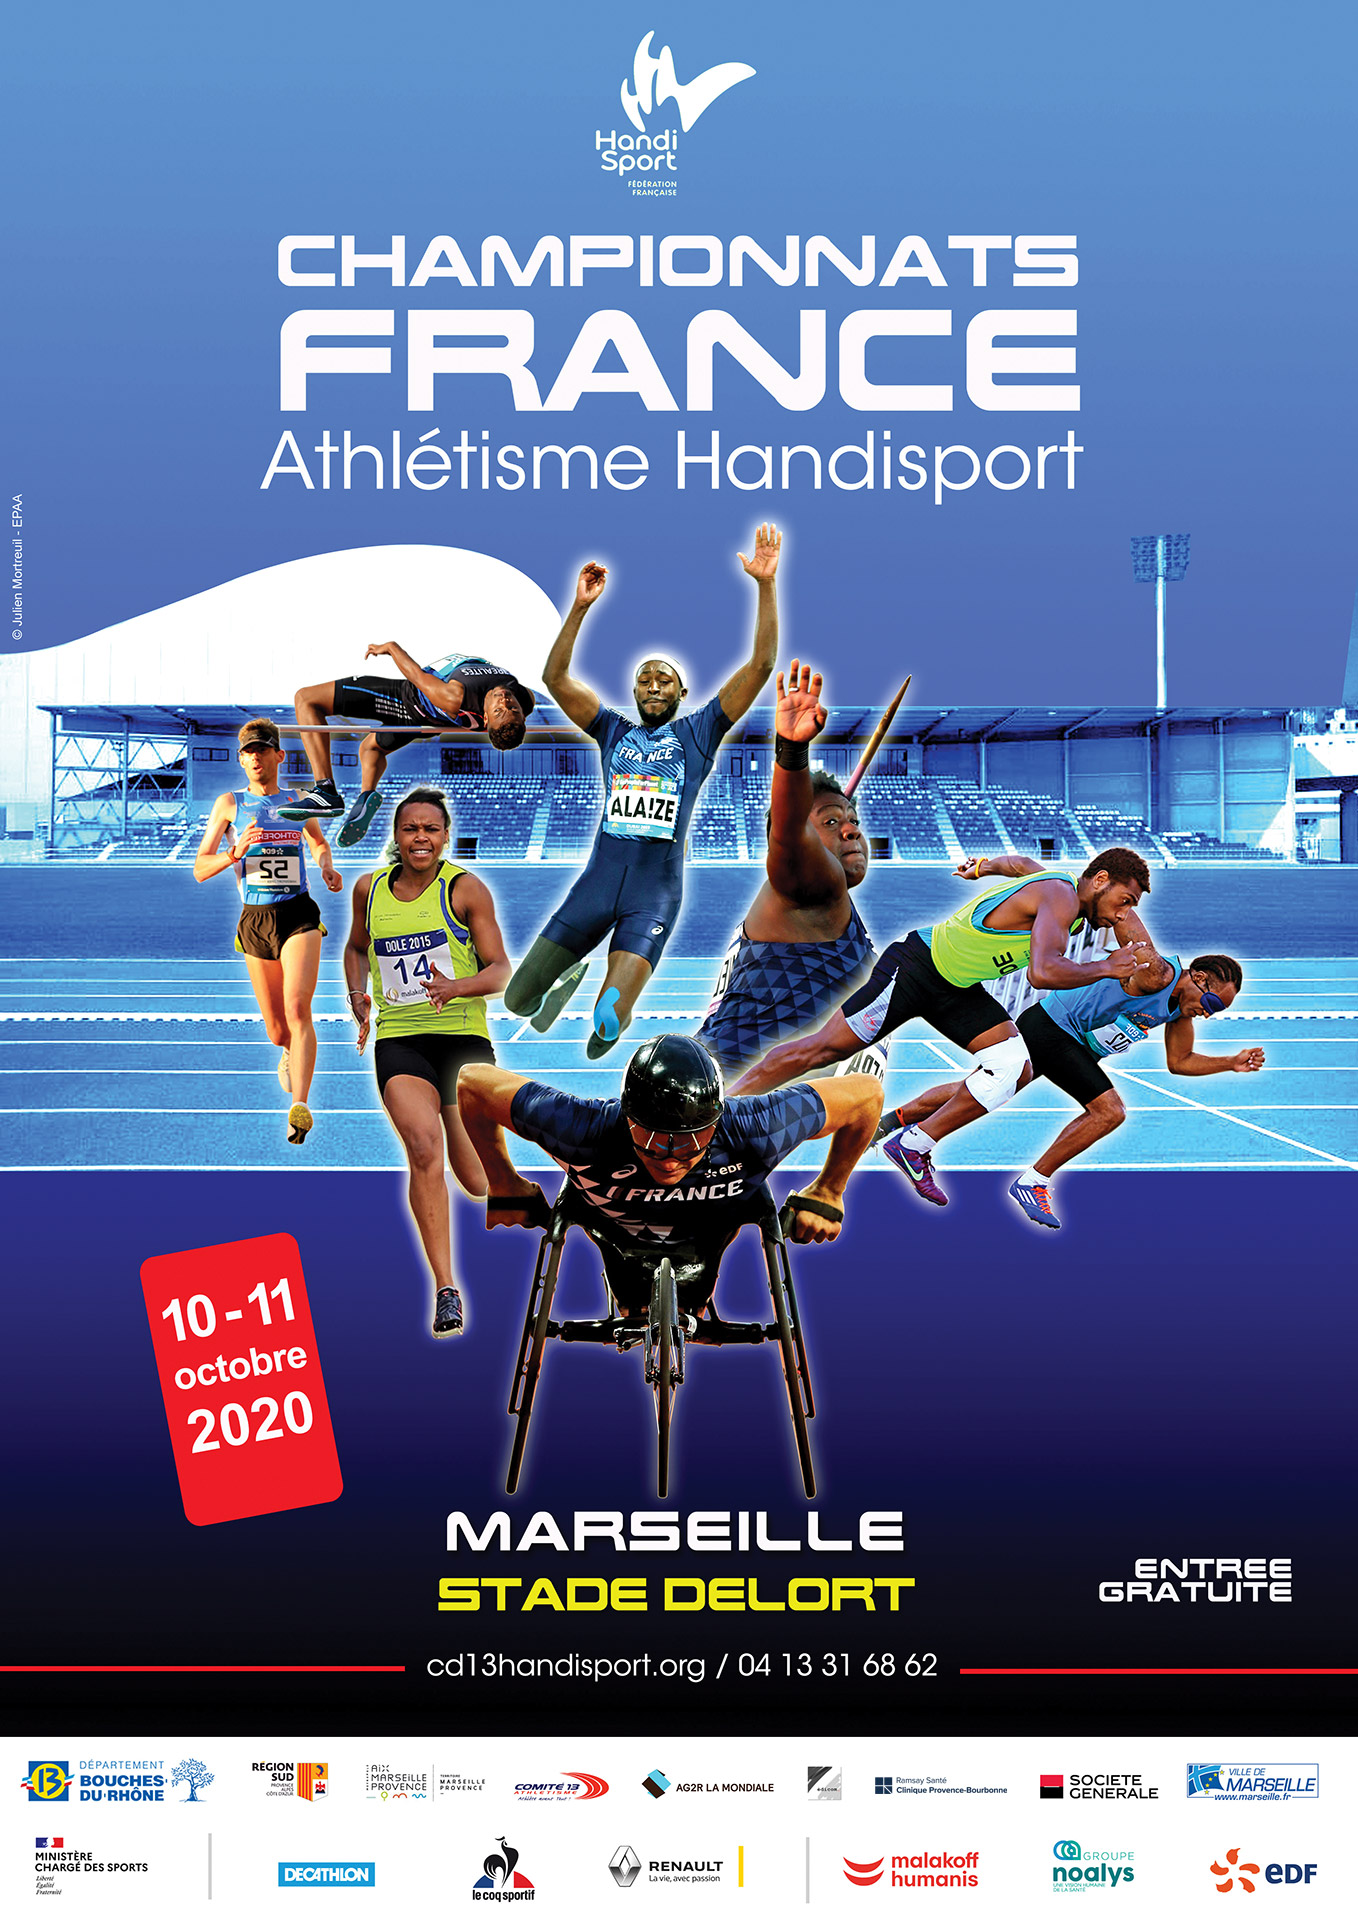 Affichage des championnats de France d'athlétisme handisport